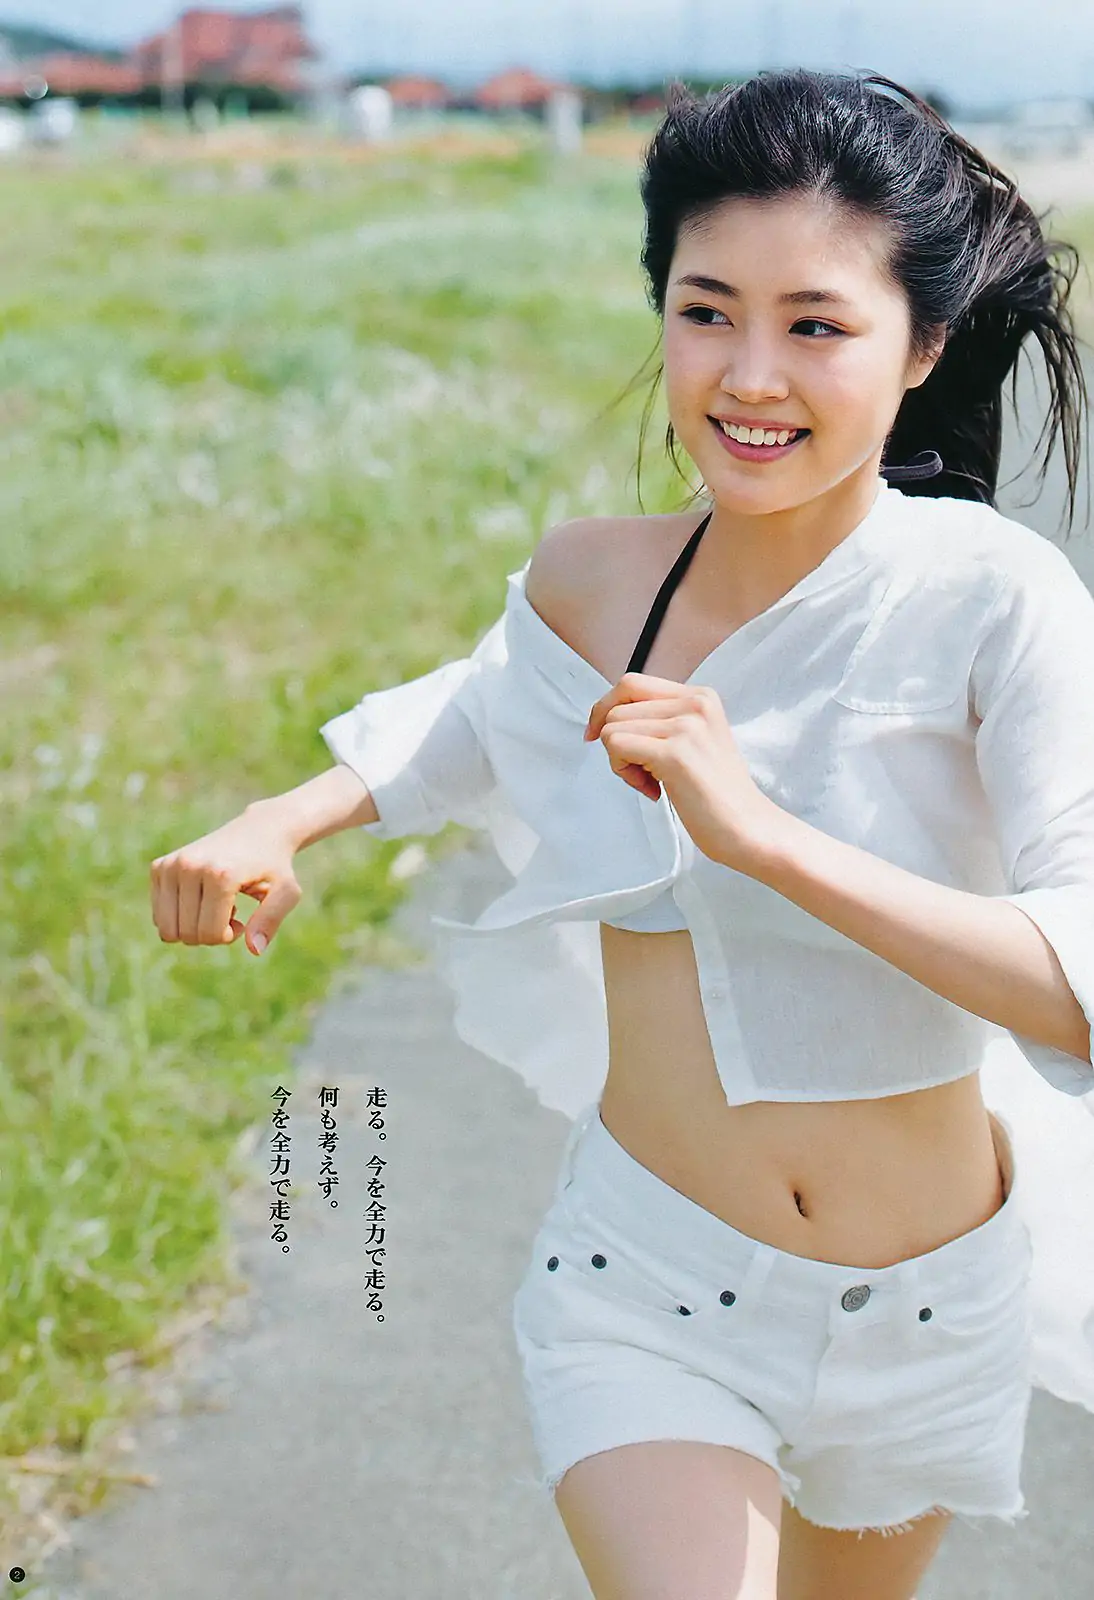 有村架純 横山由依 [週刊ヤングジャンプ] 2011年No.40 写真杂志